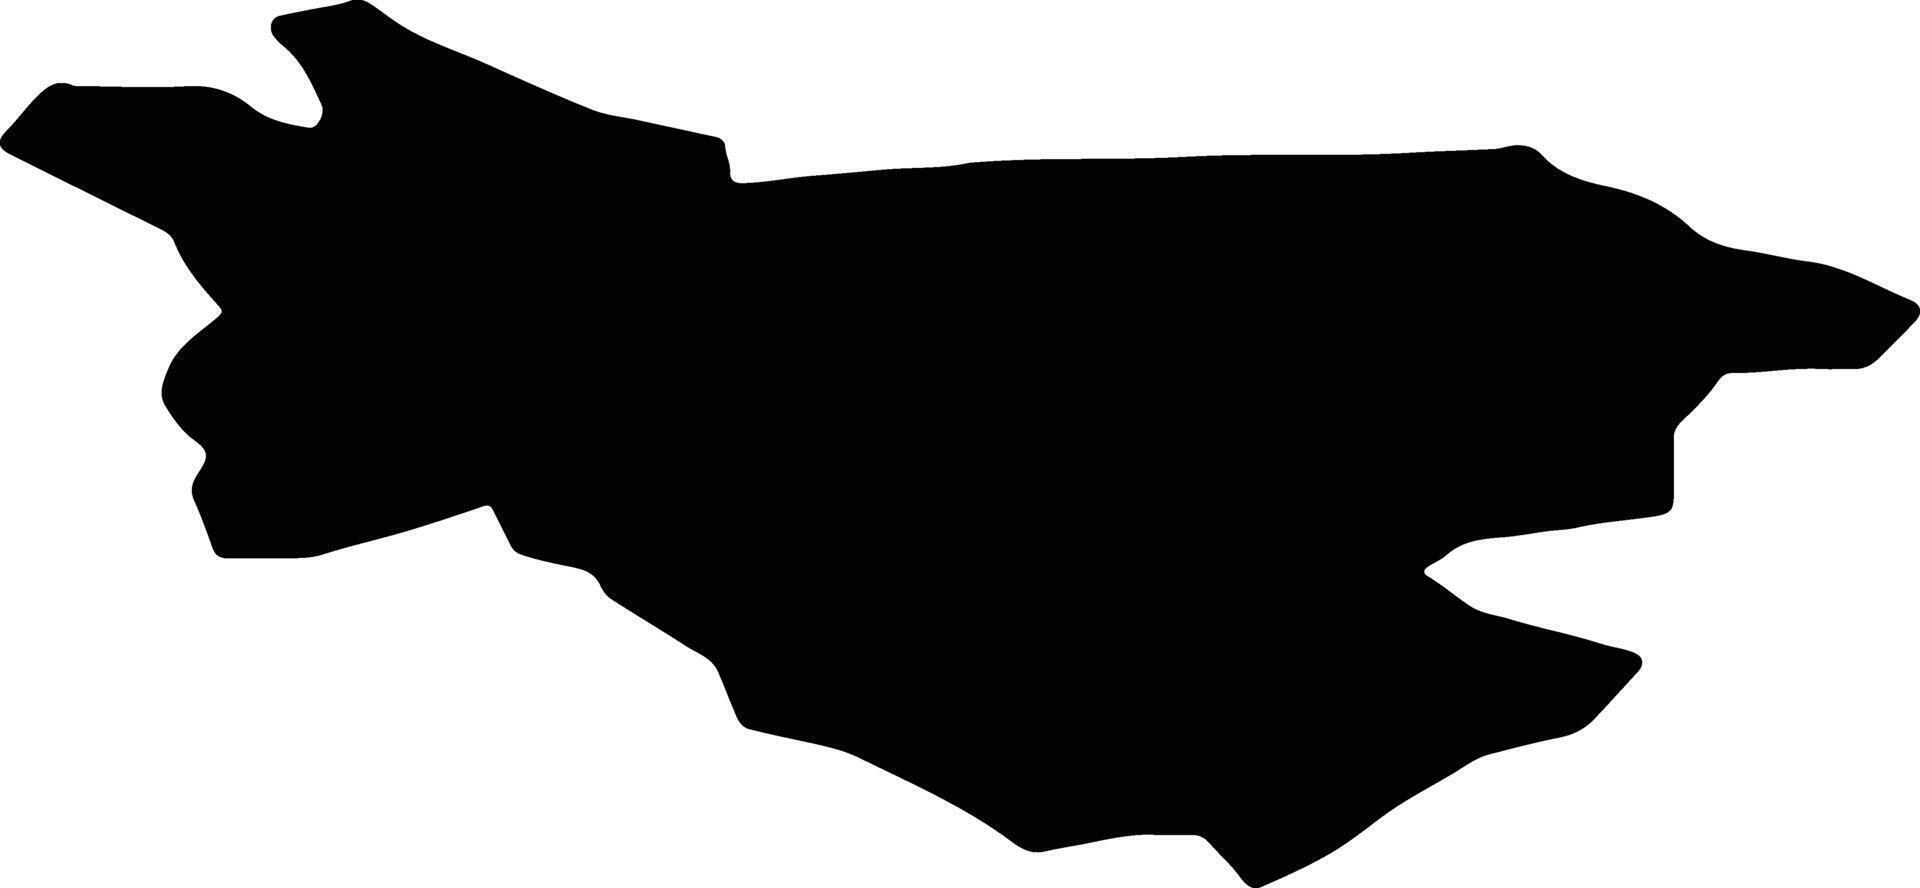 Burtnieku Latvia silhouette map vector